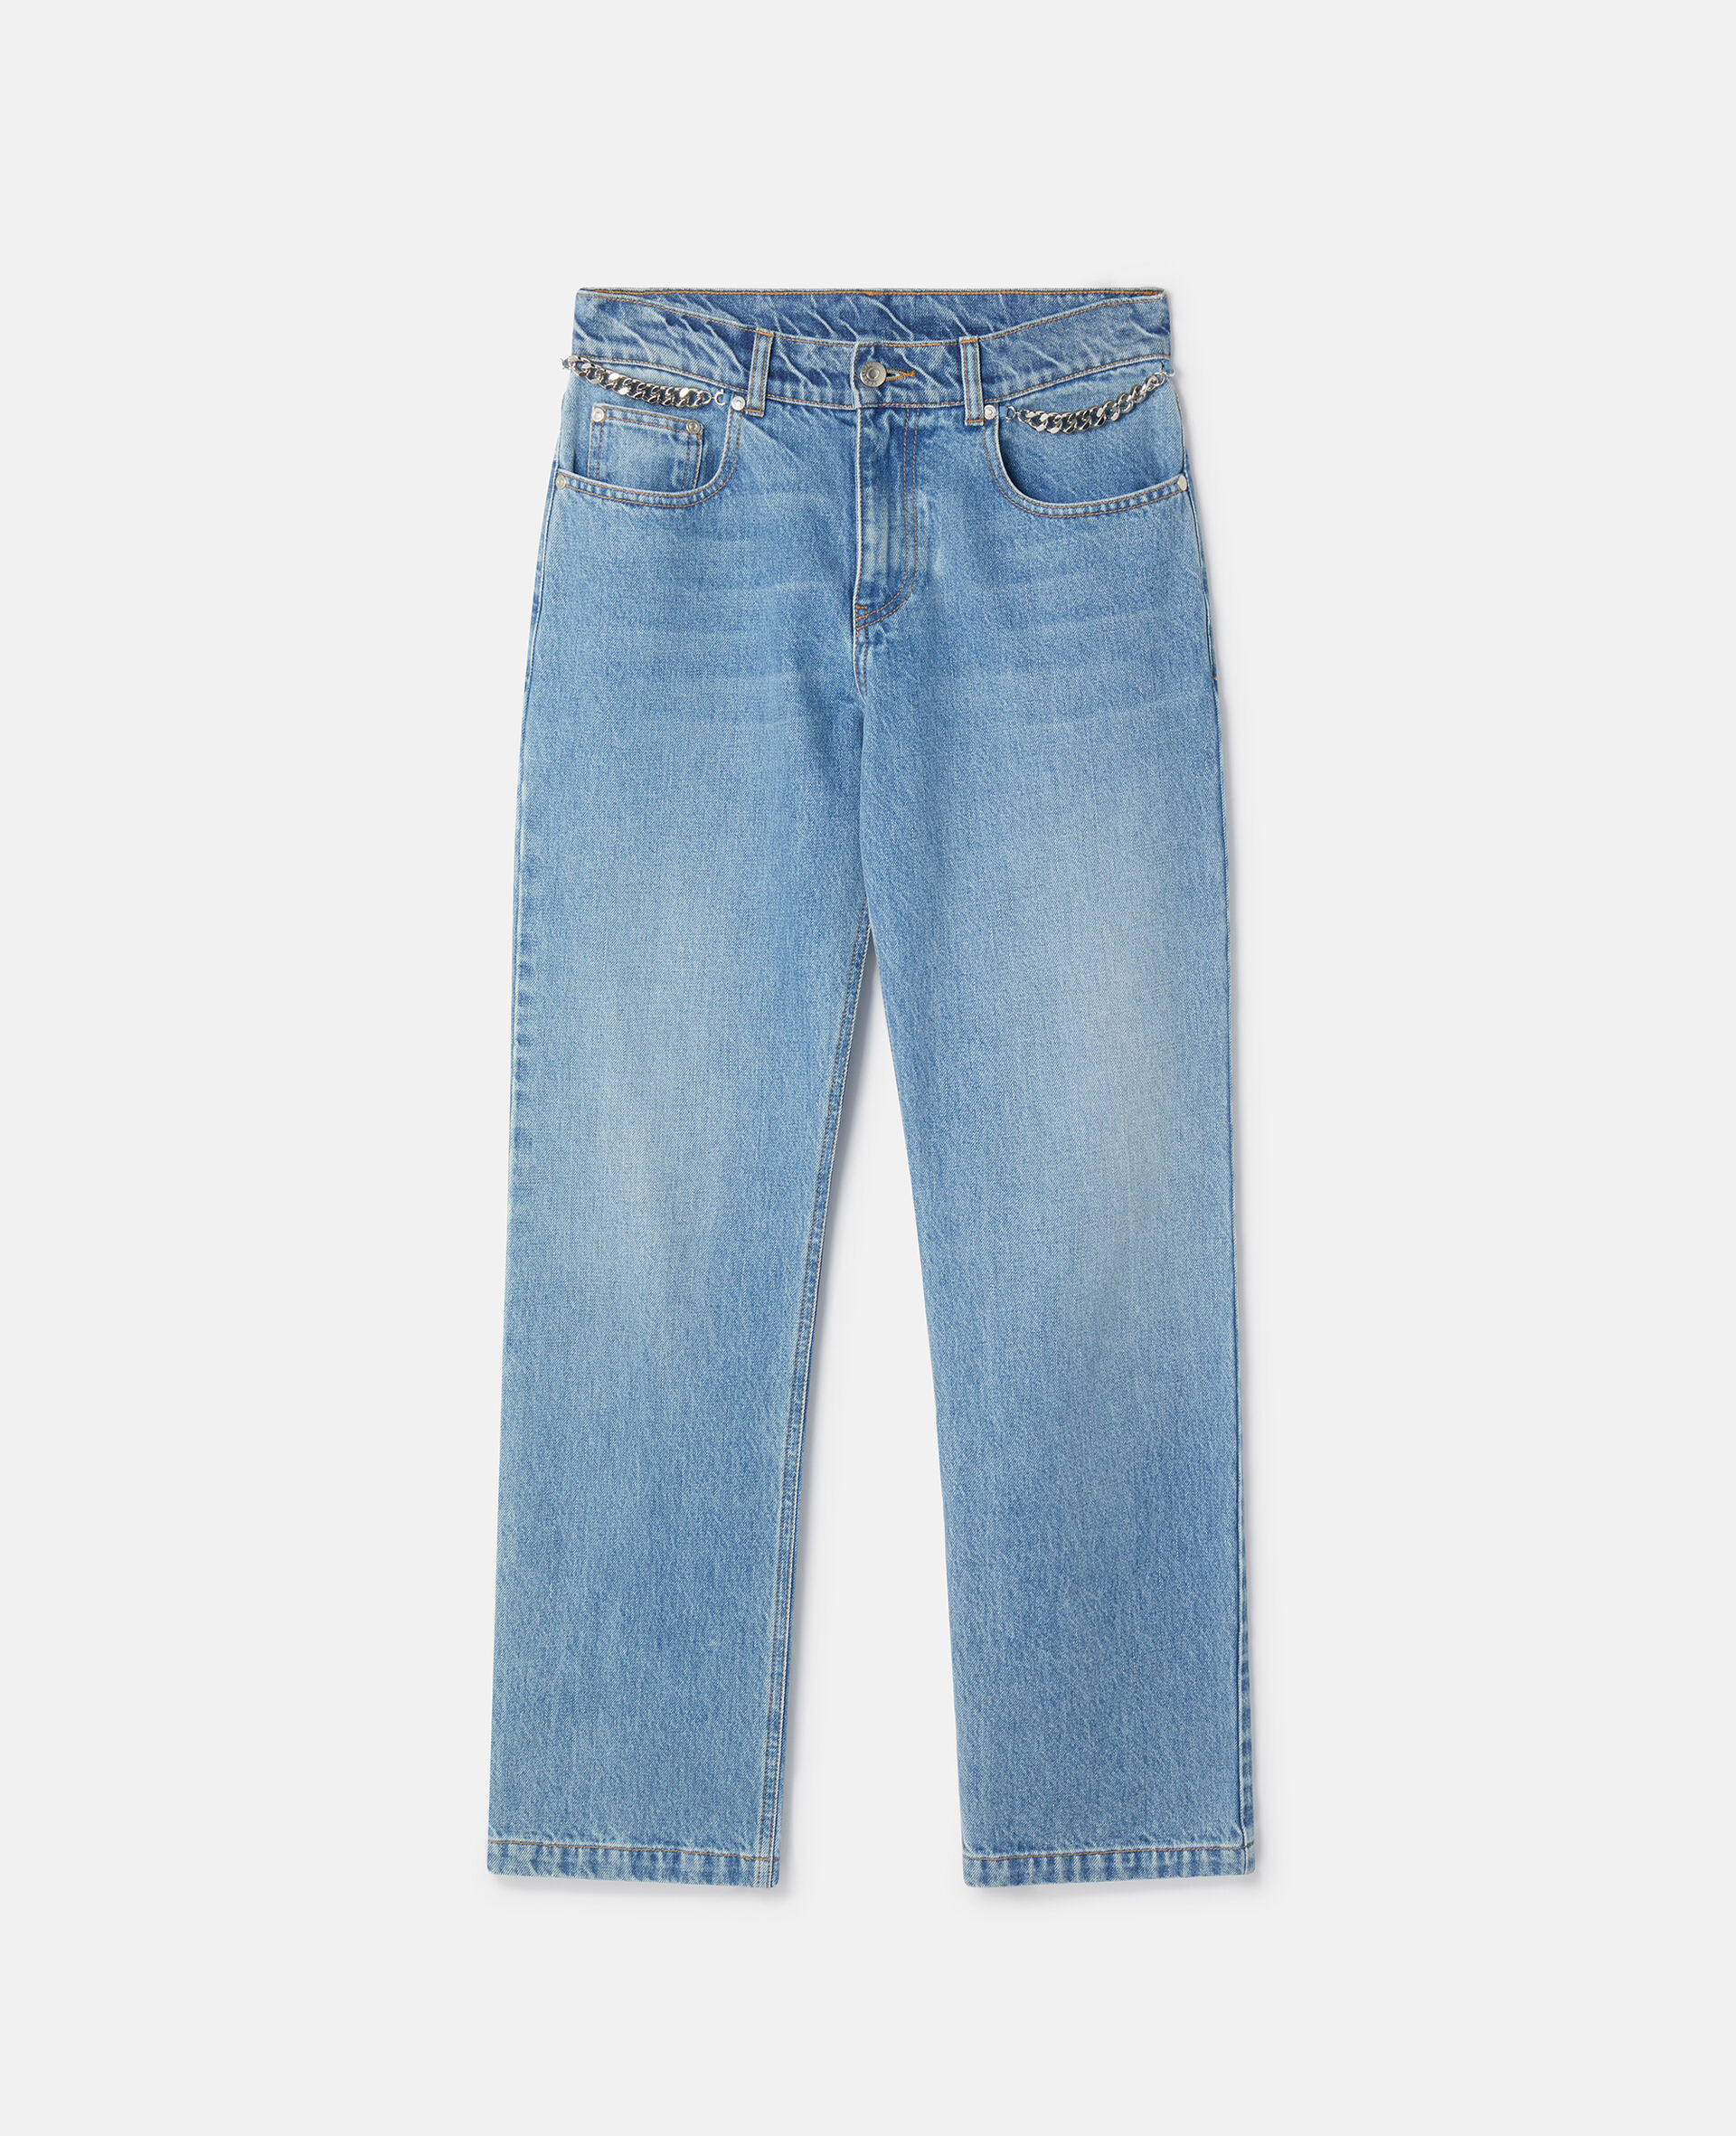 Falabella Jeans in 7/8-Länge mit Kette in Light Washed-Optik-Blau-large image number 0